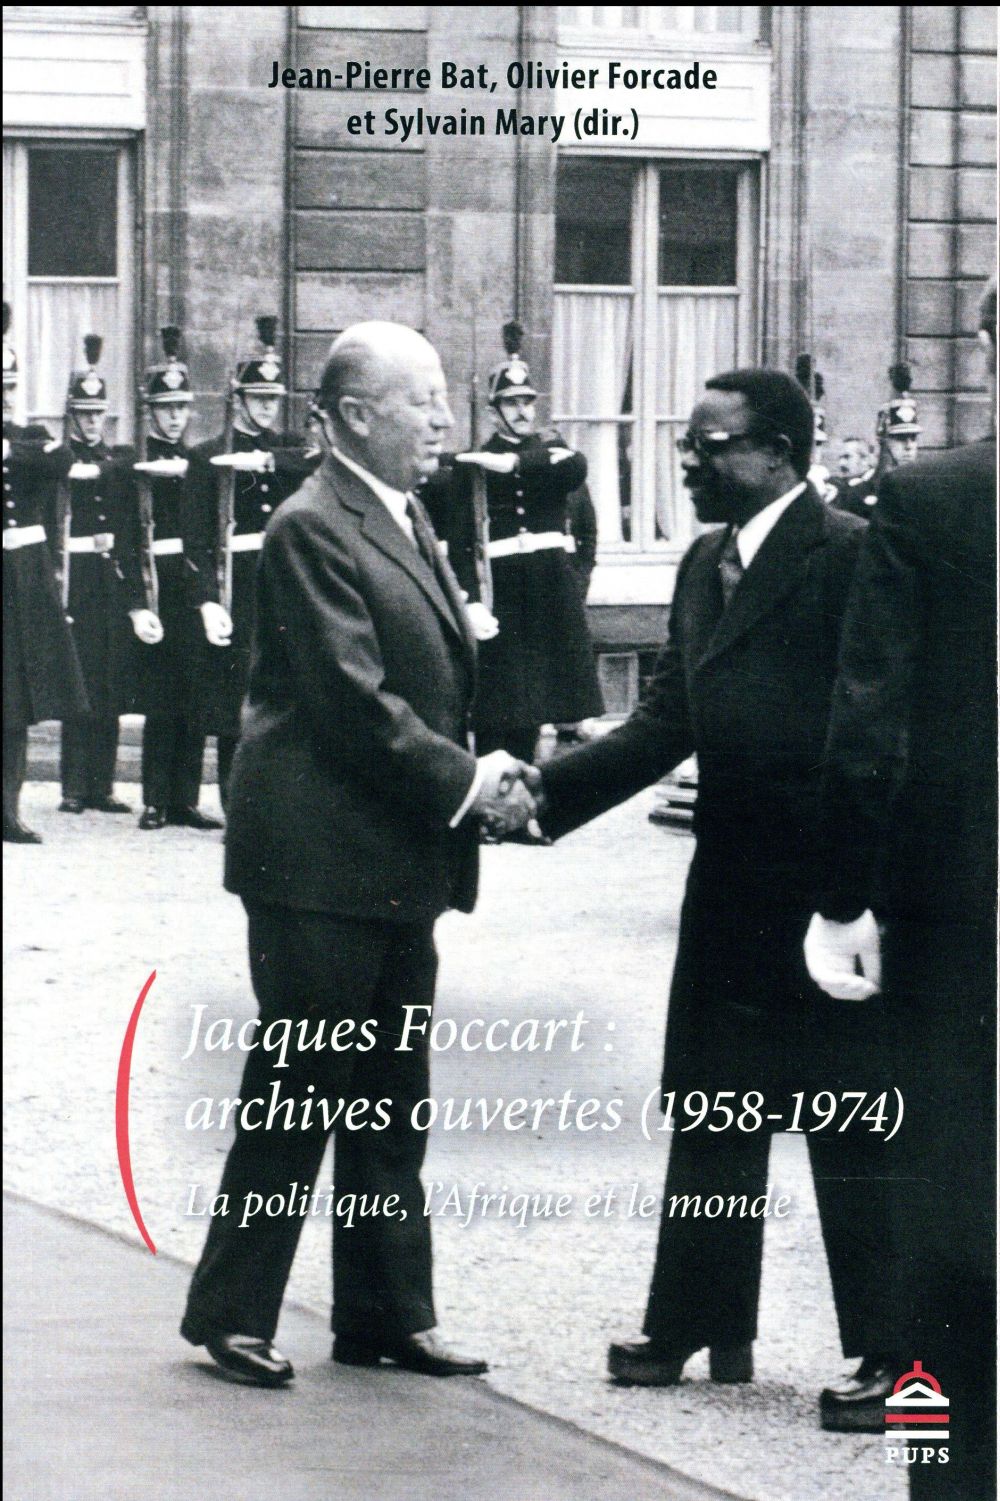 JACQUES FOCCART : ARCHIVES OUVERTES - LA POLITIQUE, L AFRIQUE ET L'OUTRE-MER